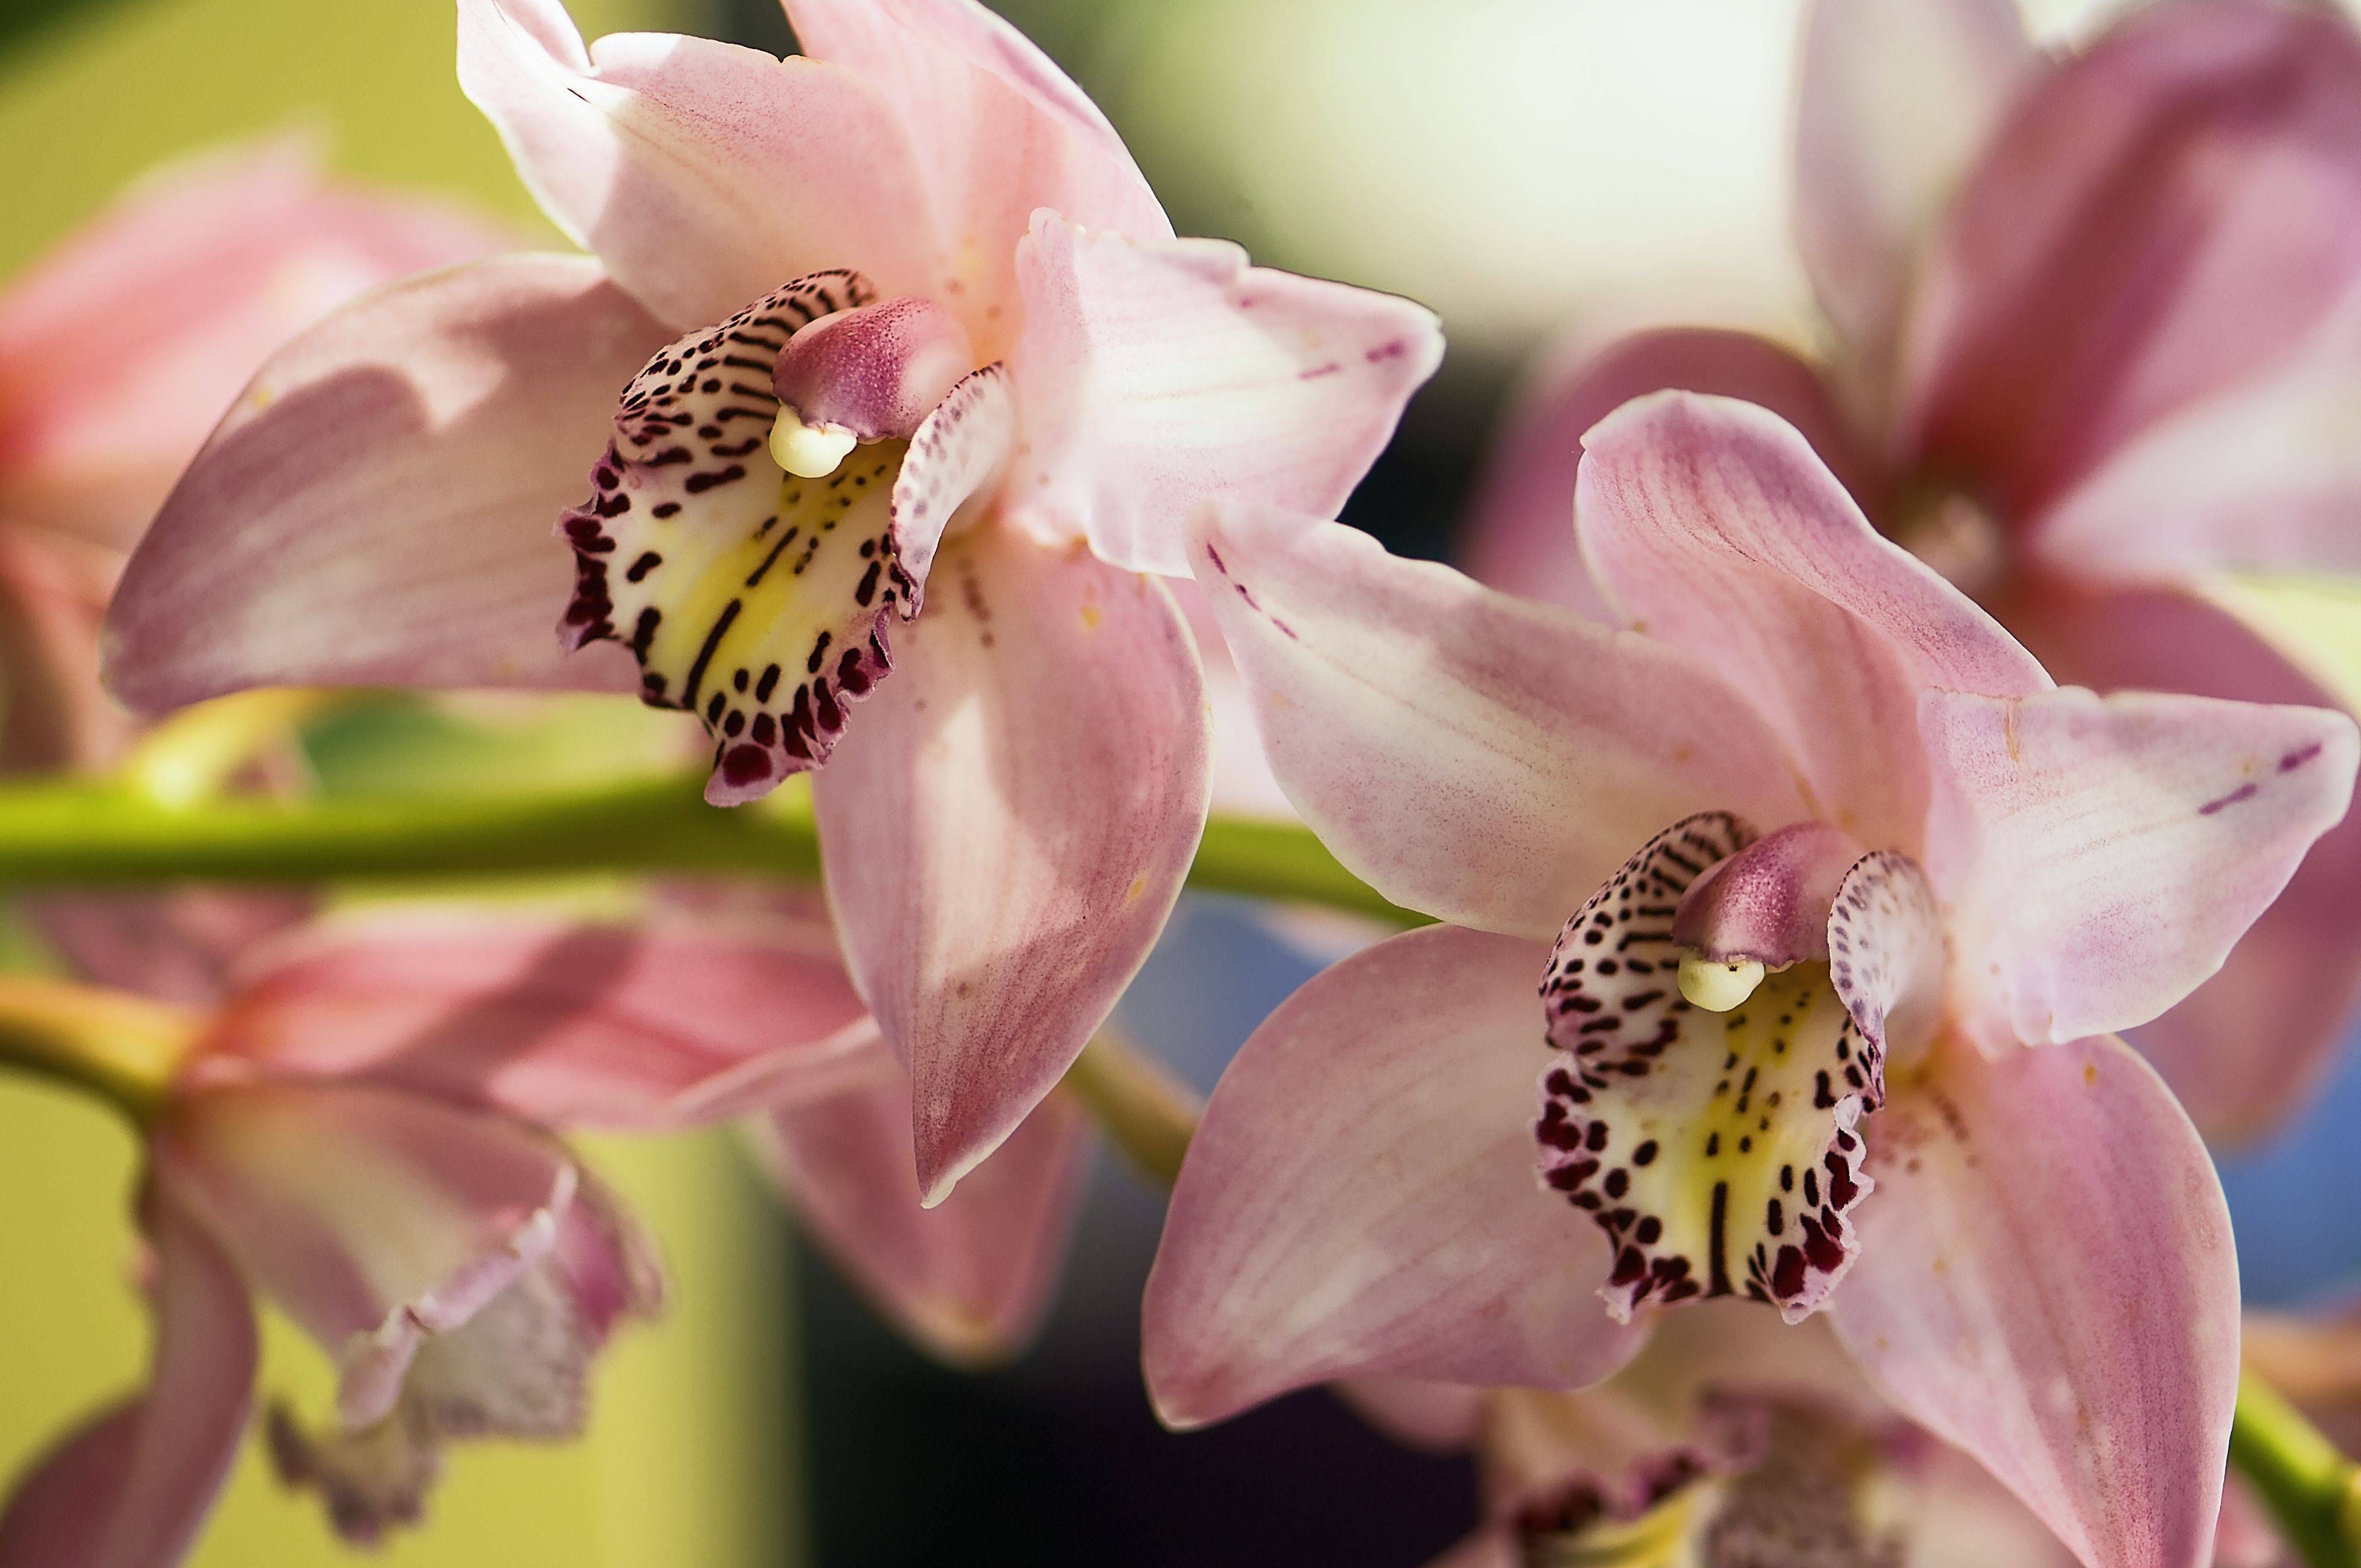 Орхидея цимбидиум: описание сорта с фото, посадка и уход в домашних условиях, пересадка, размножение